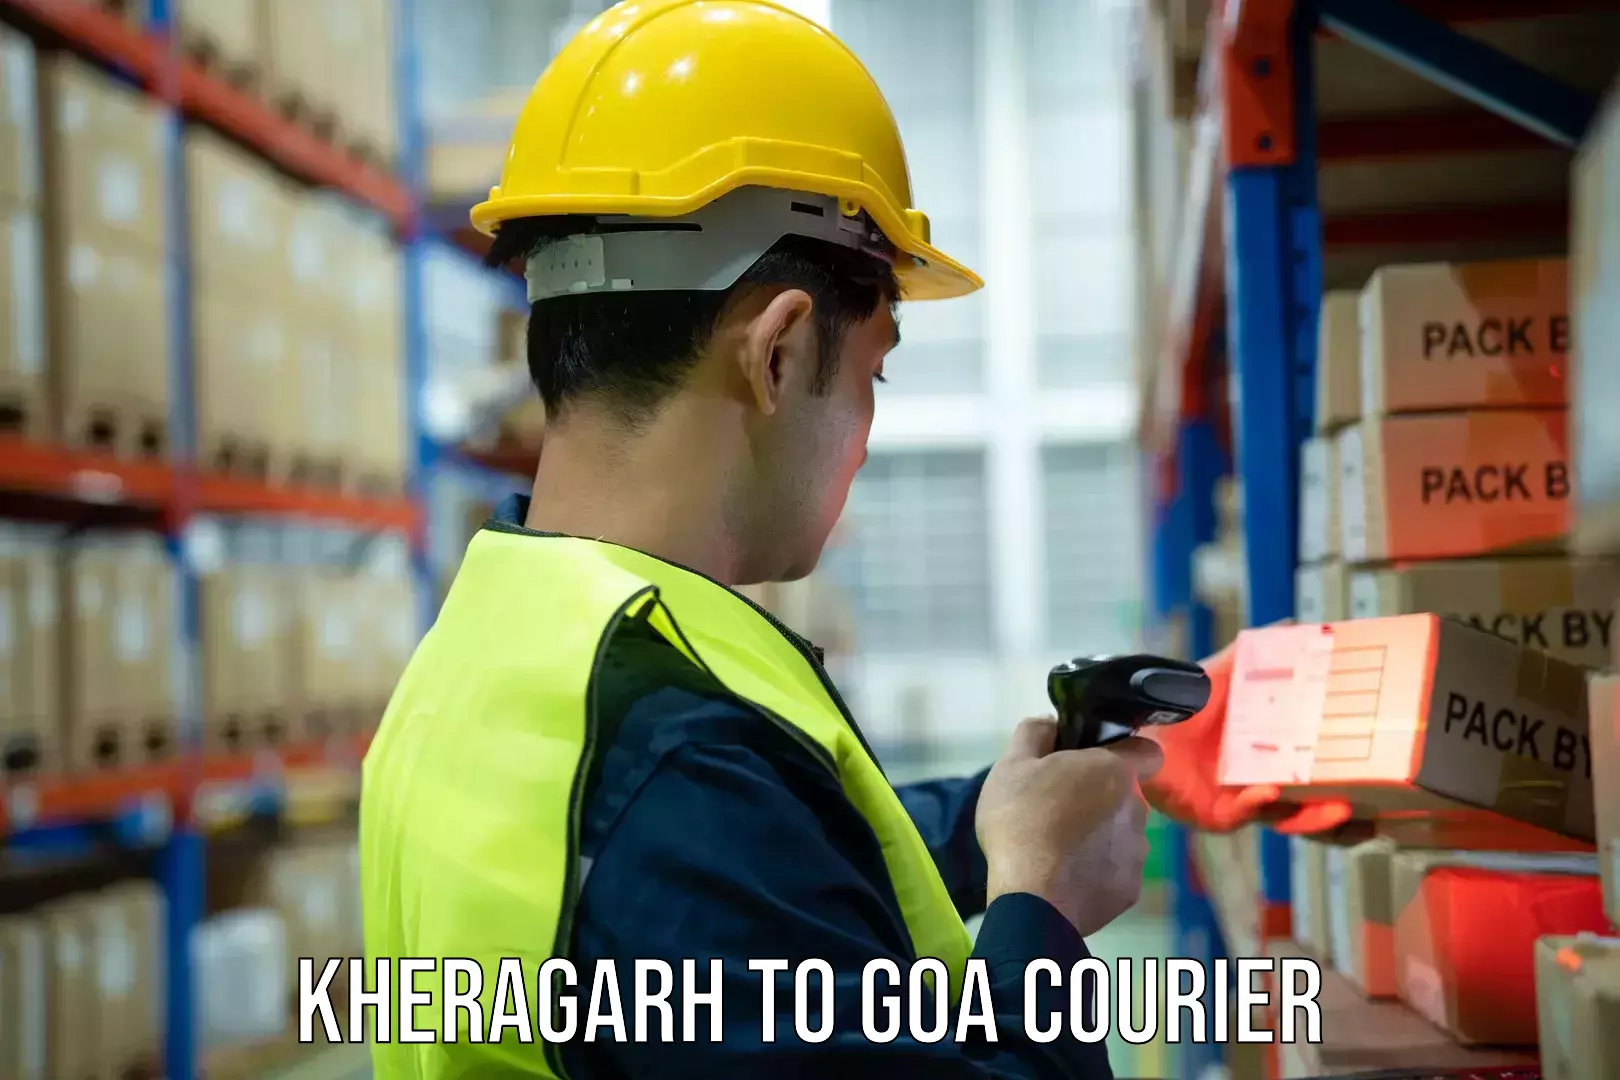 Courier service comparison in Kheragarh to Ponda